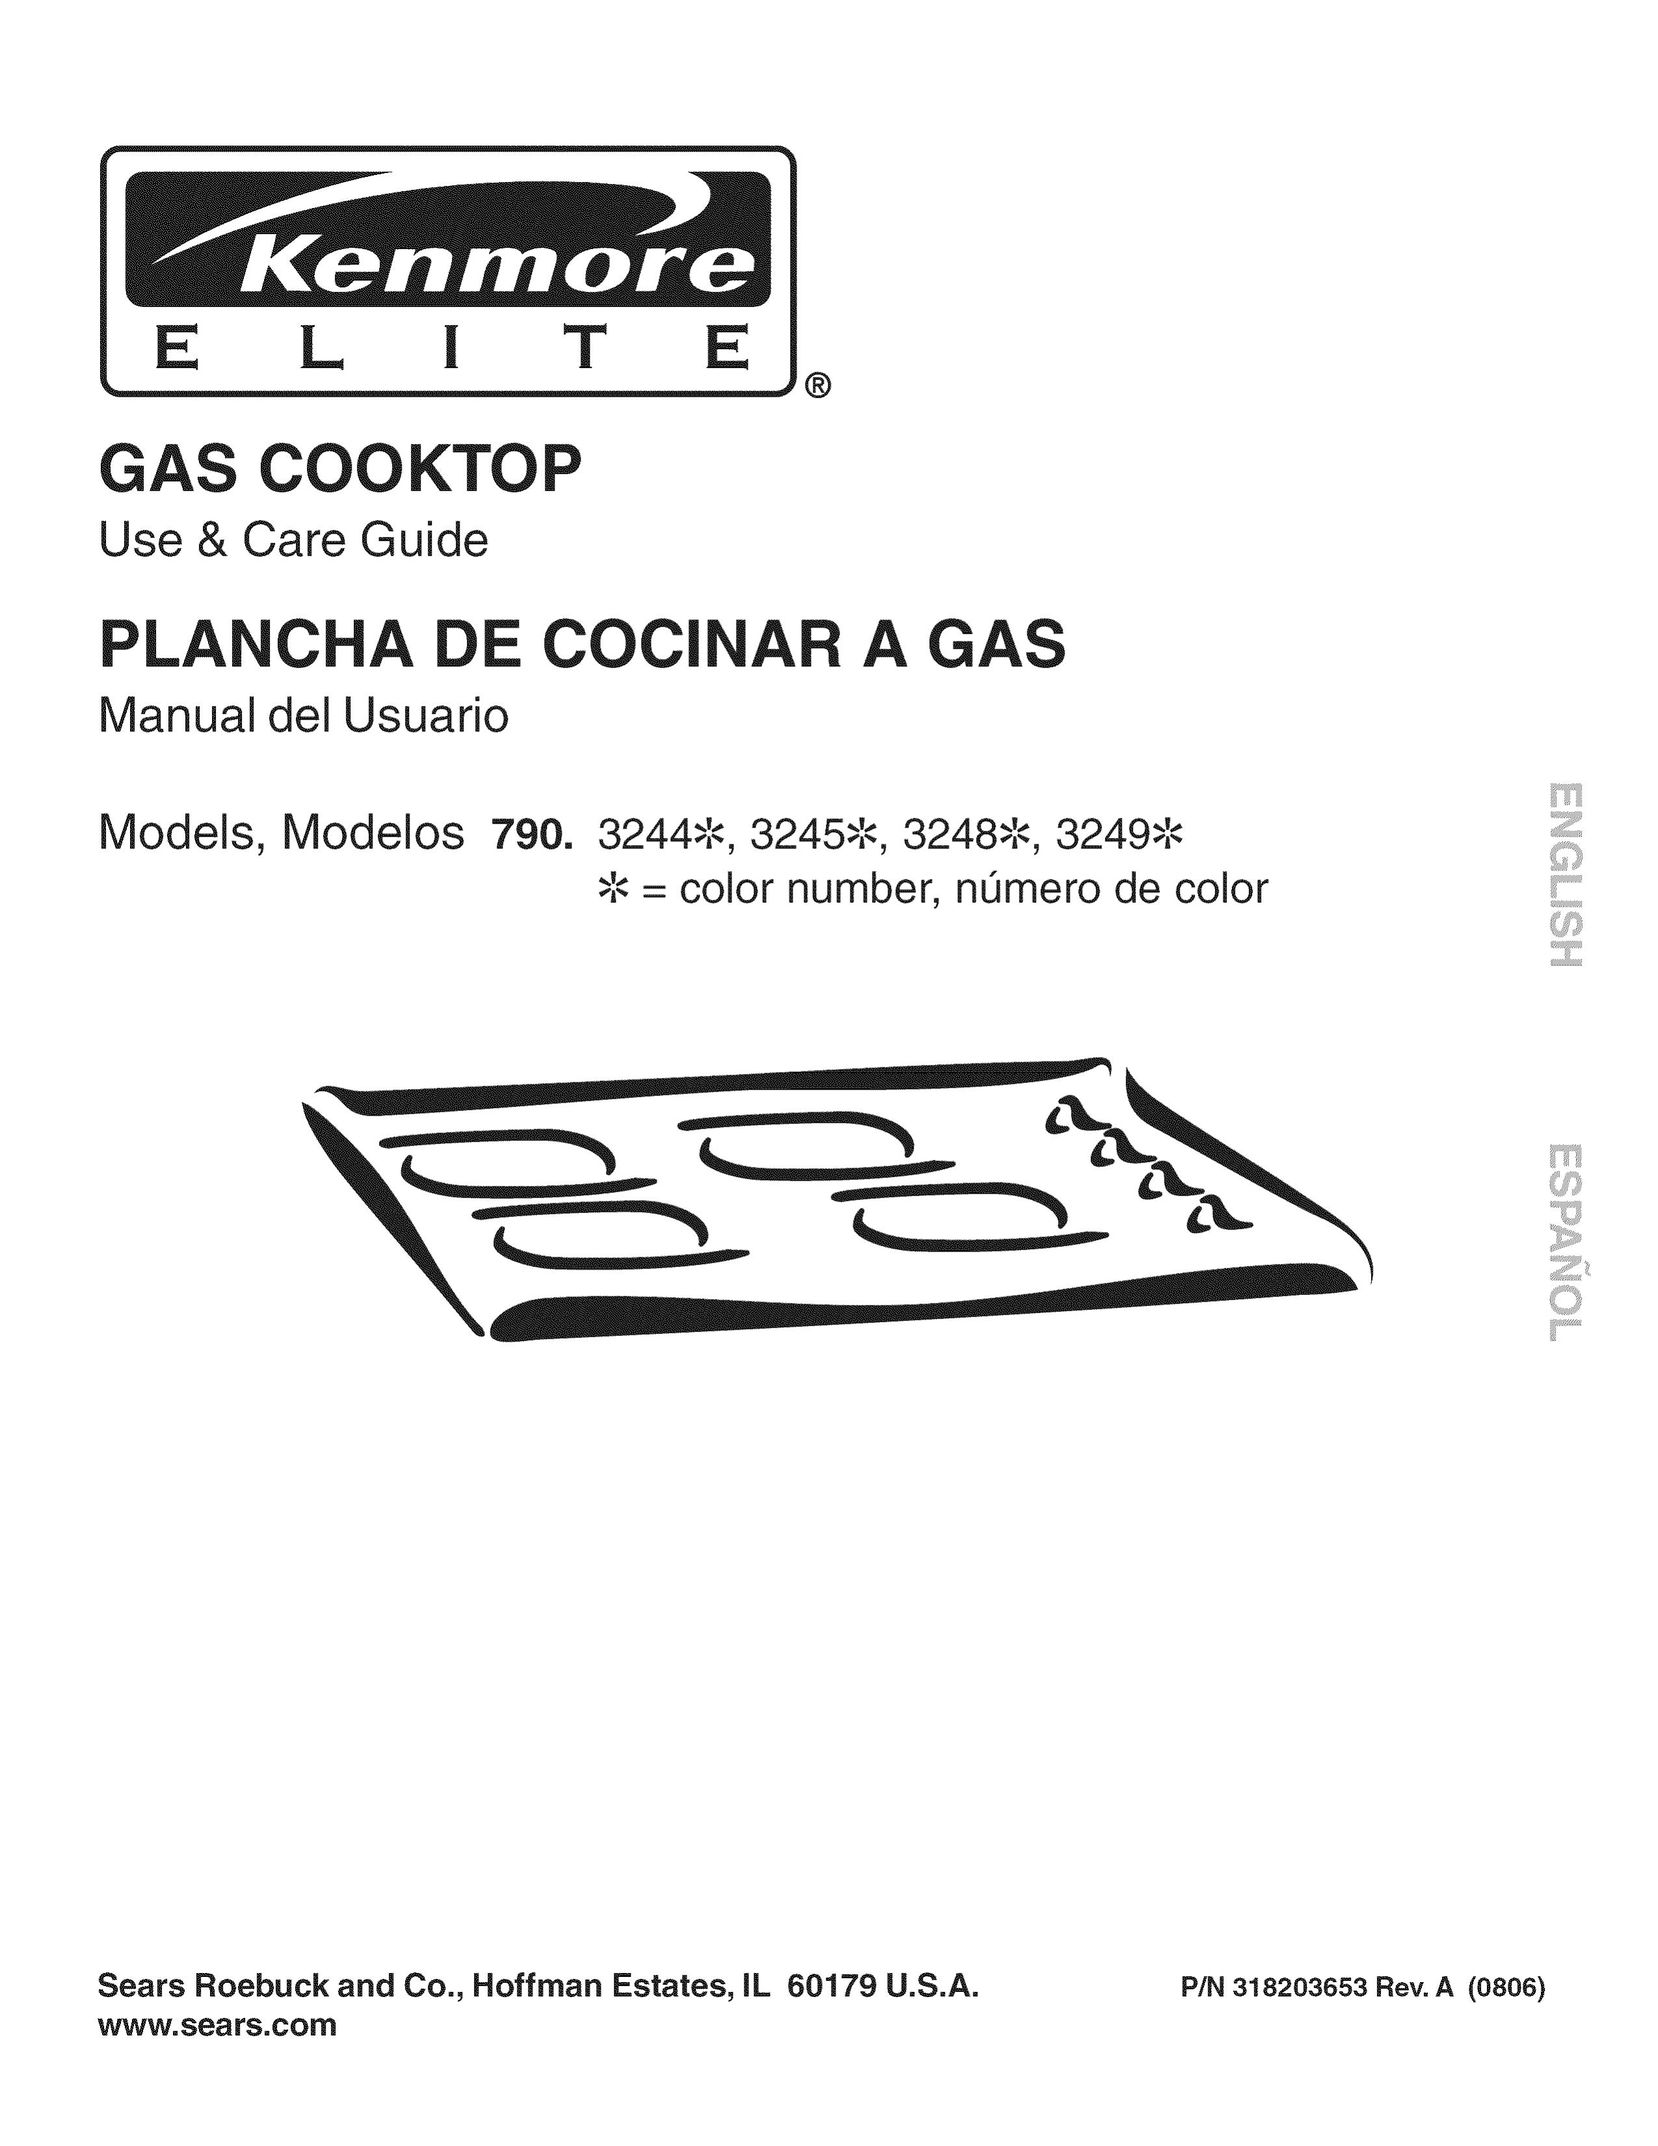 Kenmore 790.3248 Cooktop User Manual